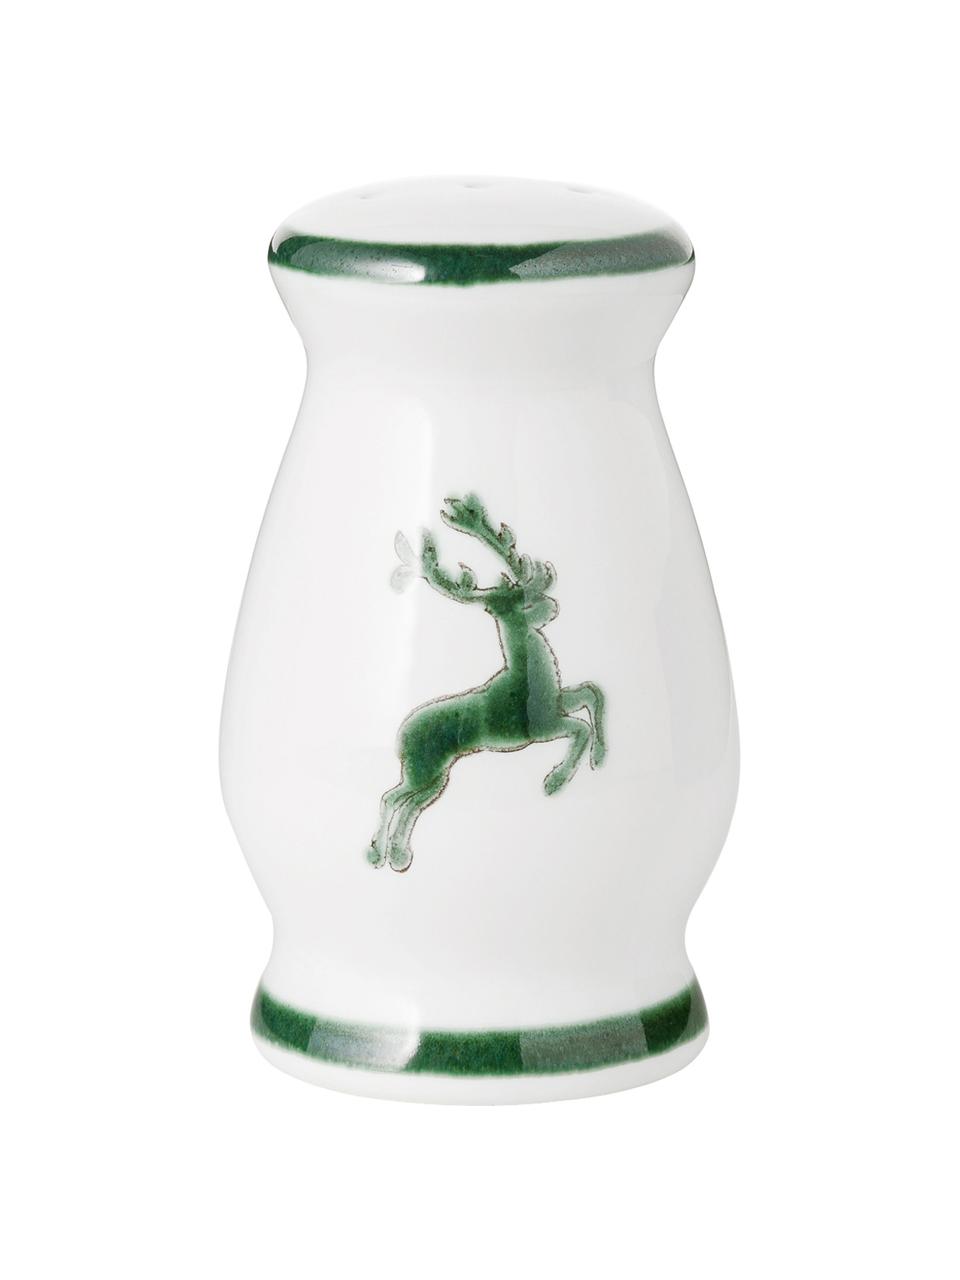 Ręcznie malowana pieprzniczka Gourmet Grüner Hirsch, Ceramika, Zielony, biały, S 4 x W 6 cm